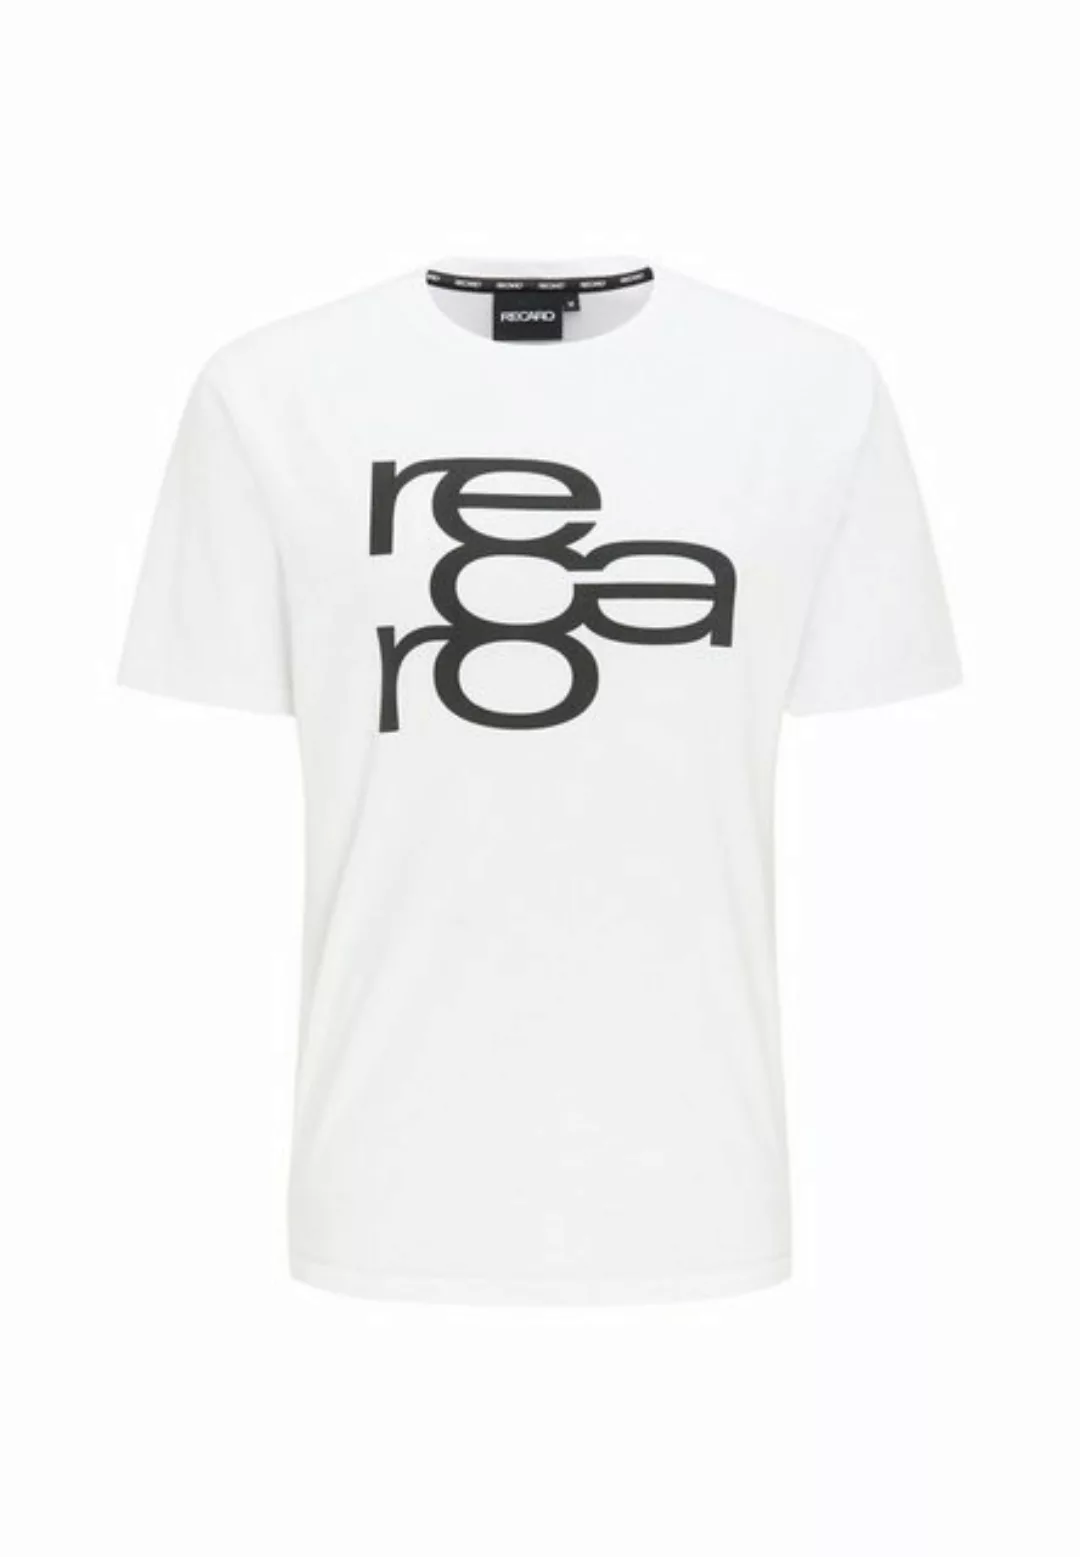 RECARO T-Shirt RECARO T-Shirt Retro, Herren Shirt, Rundhals, 100% Baumwolle günstig online kaufen